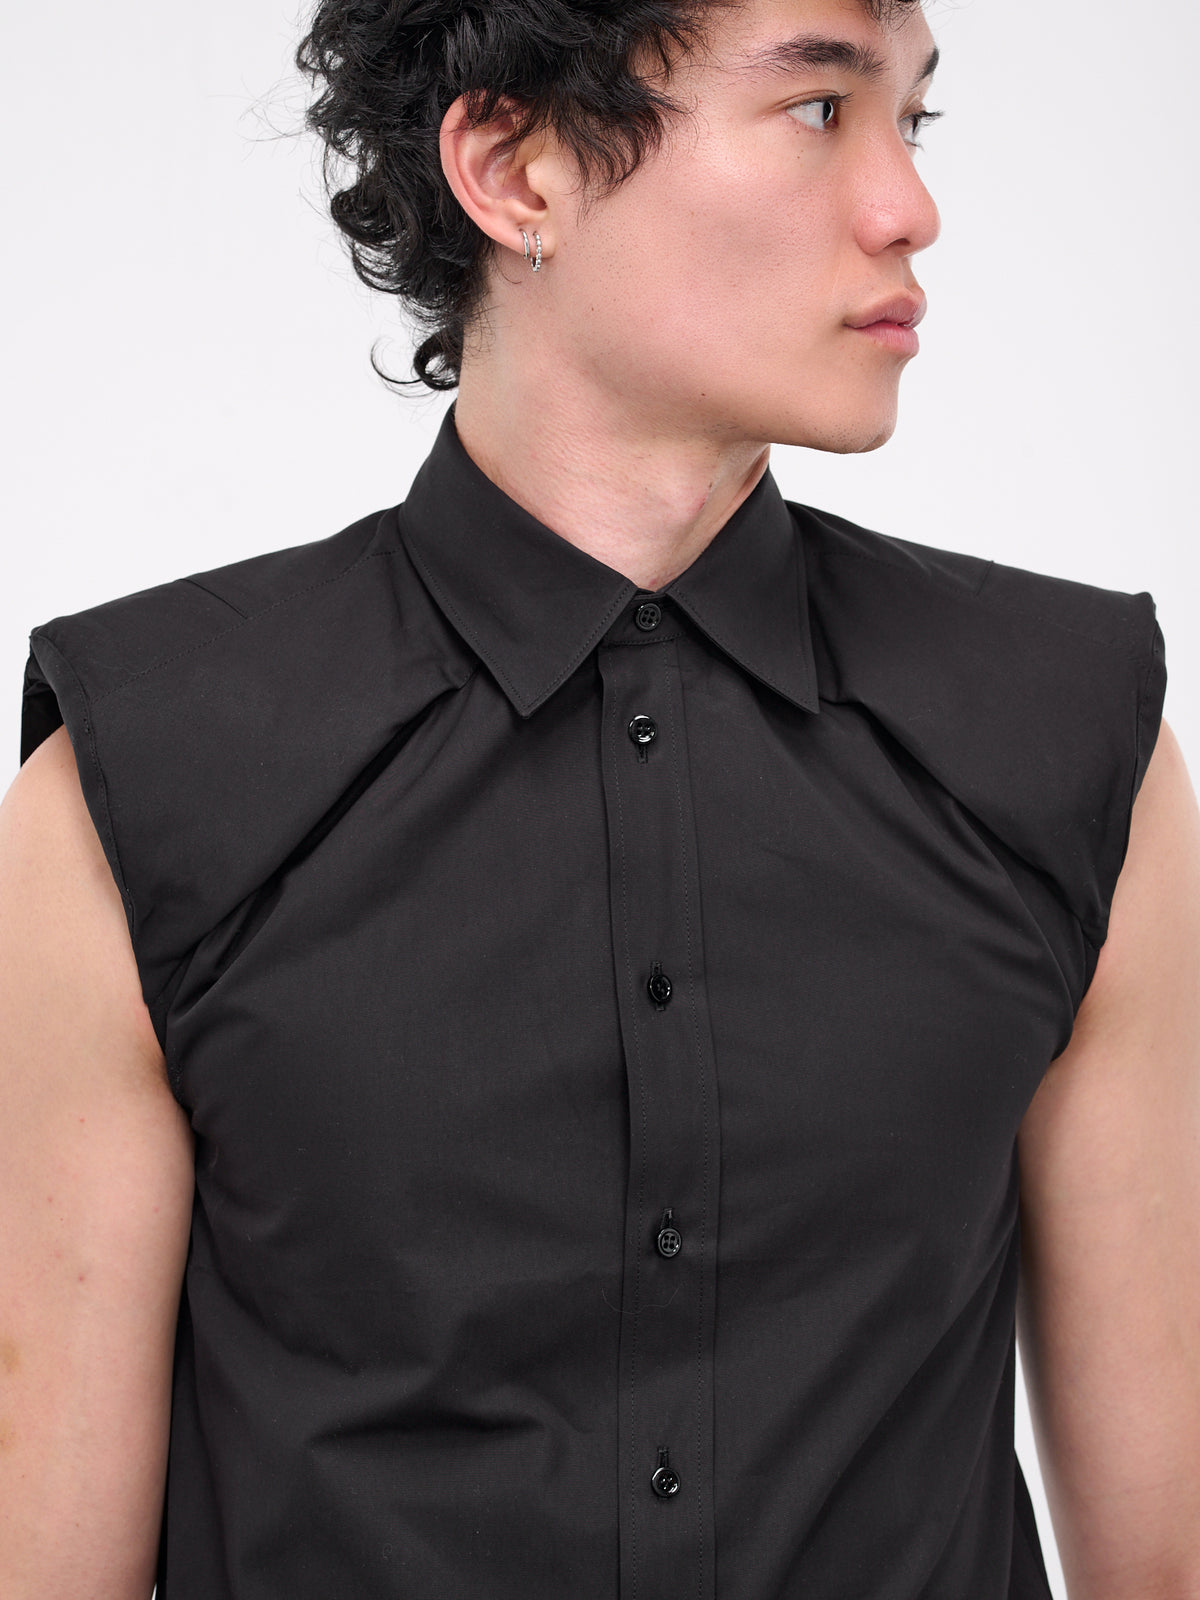 Collarbone Sleeveless Shirt (S1USH05-BLACK)